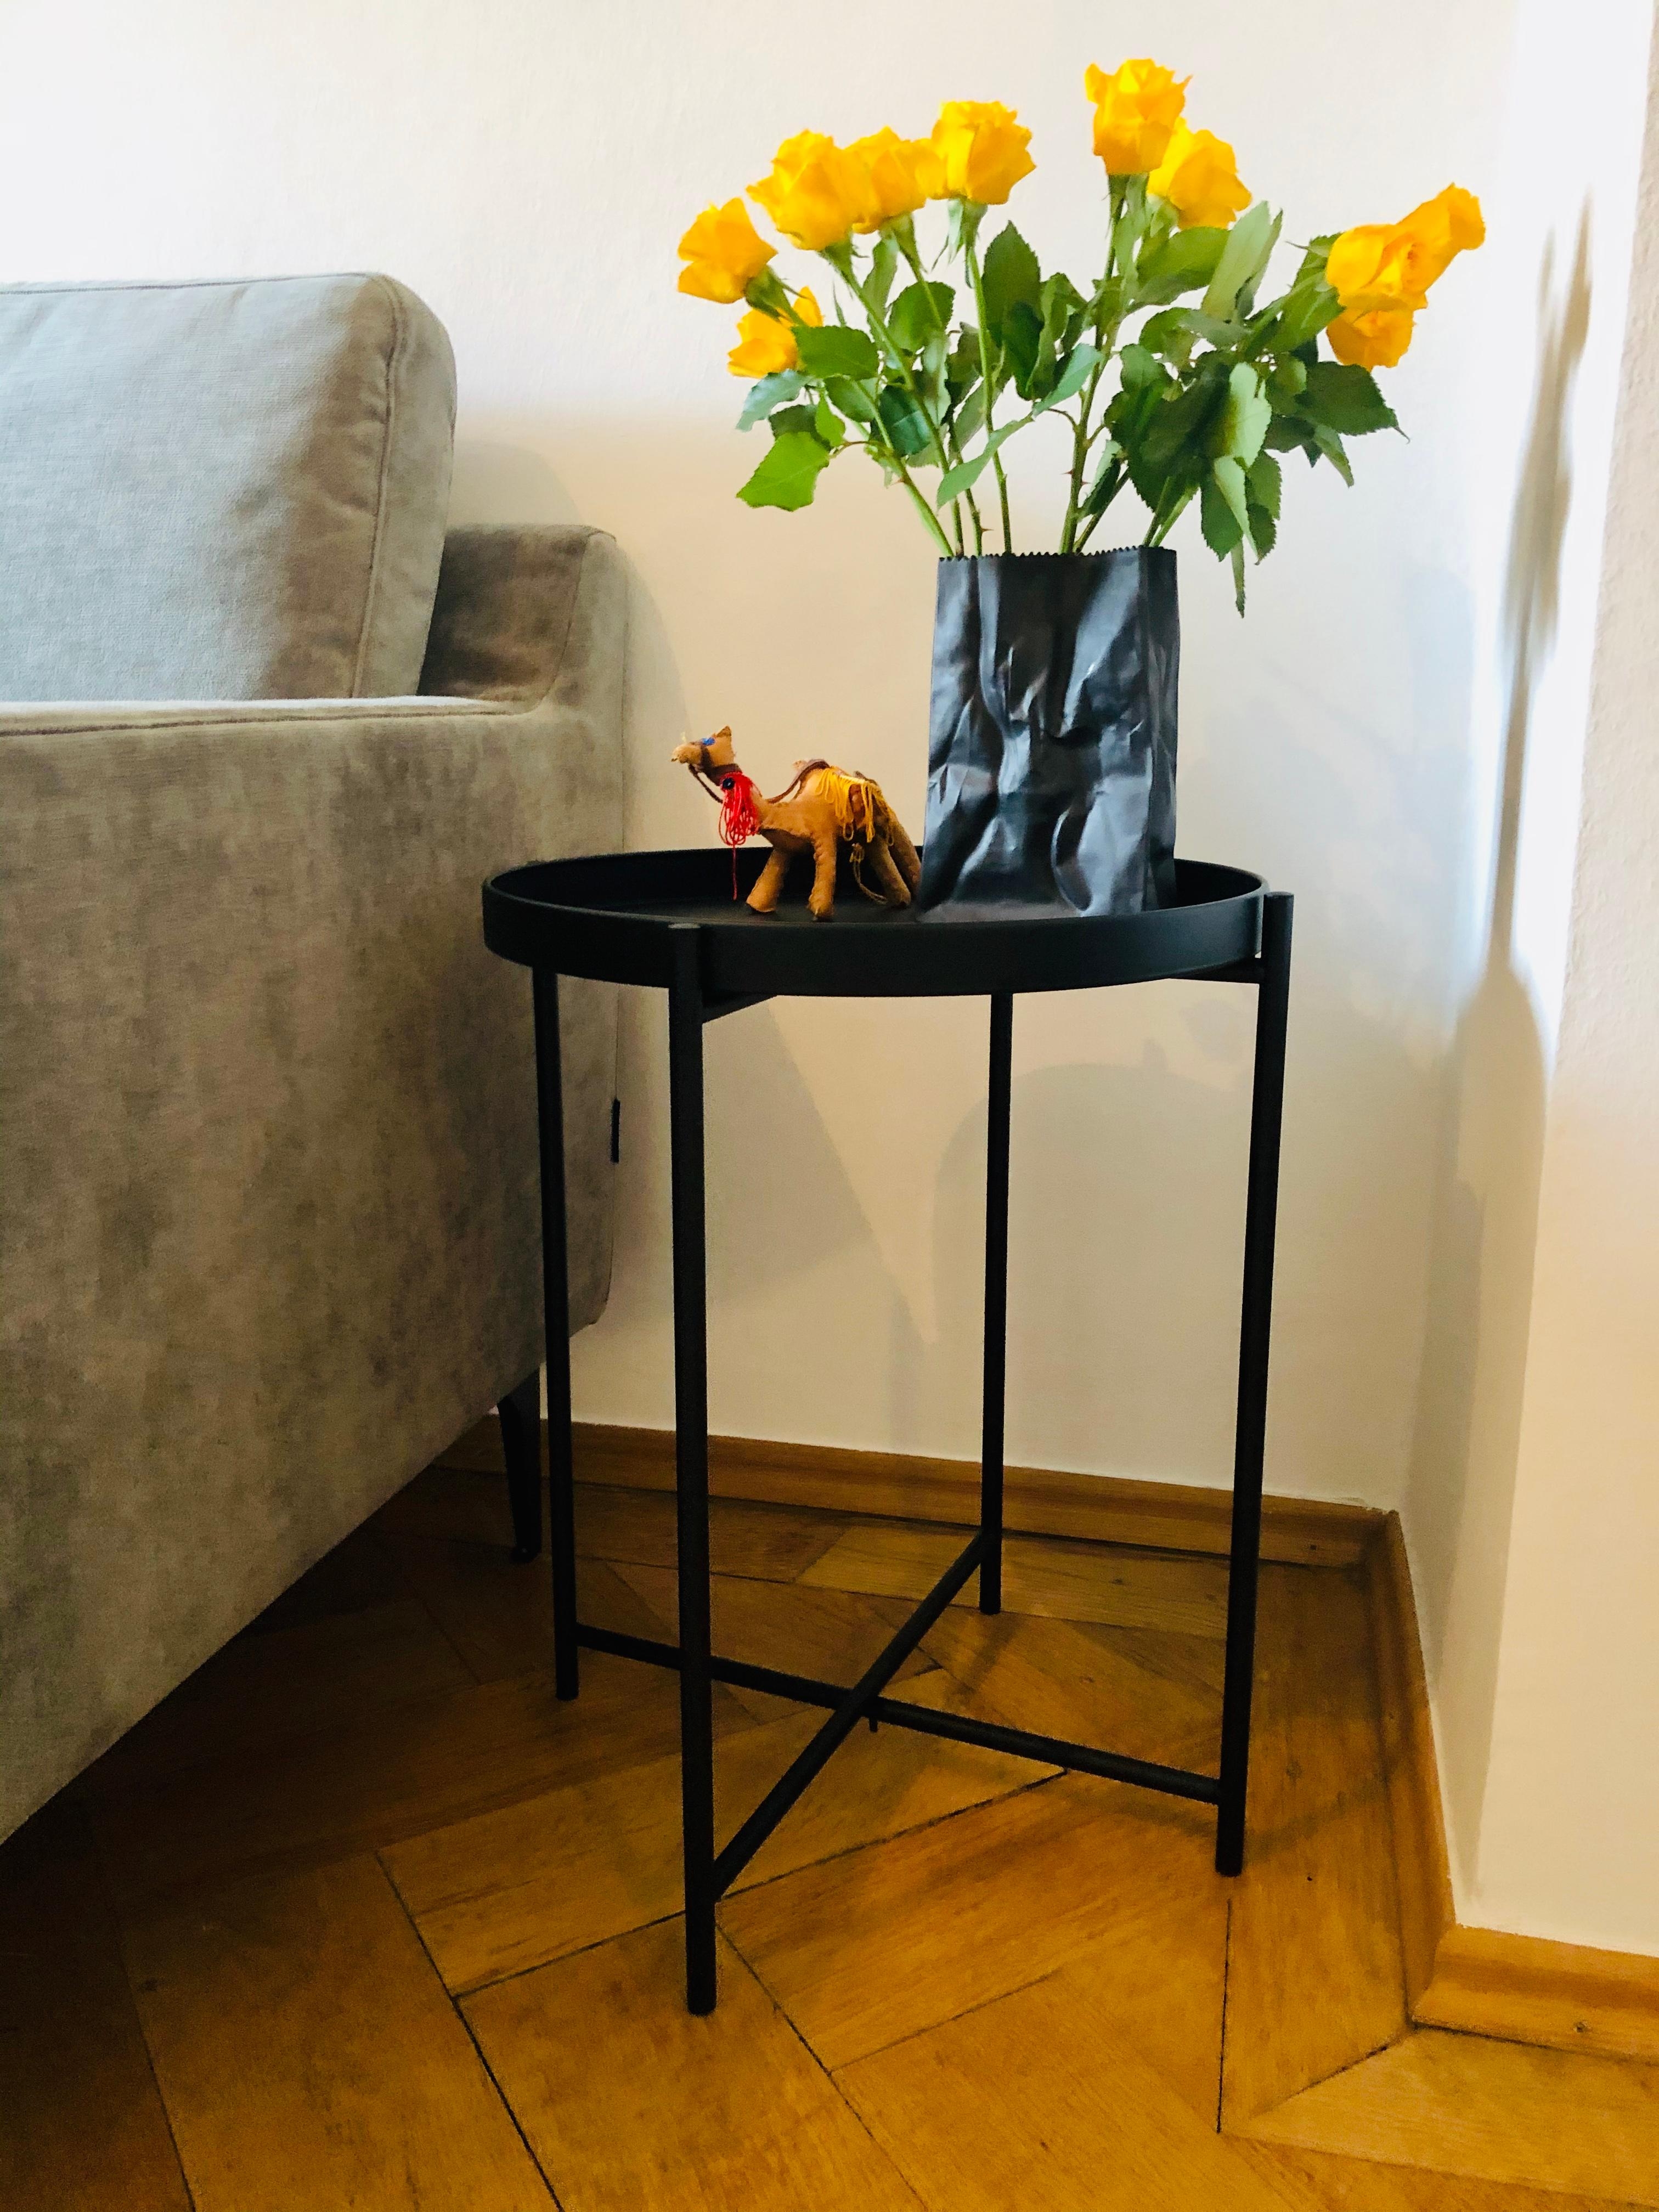 Neuer Couchtisch ...
#wohnzimmer #couchtisch #minimalistisch #altbau #alwaysfreshflowers